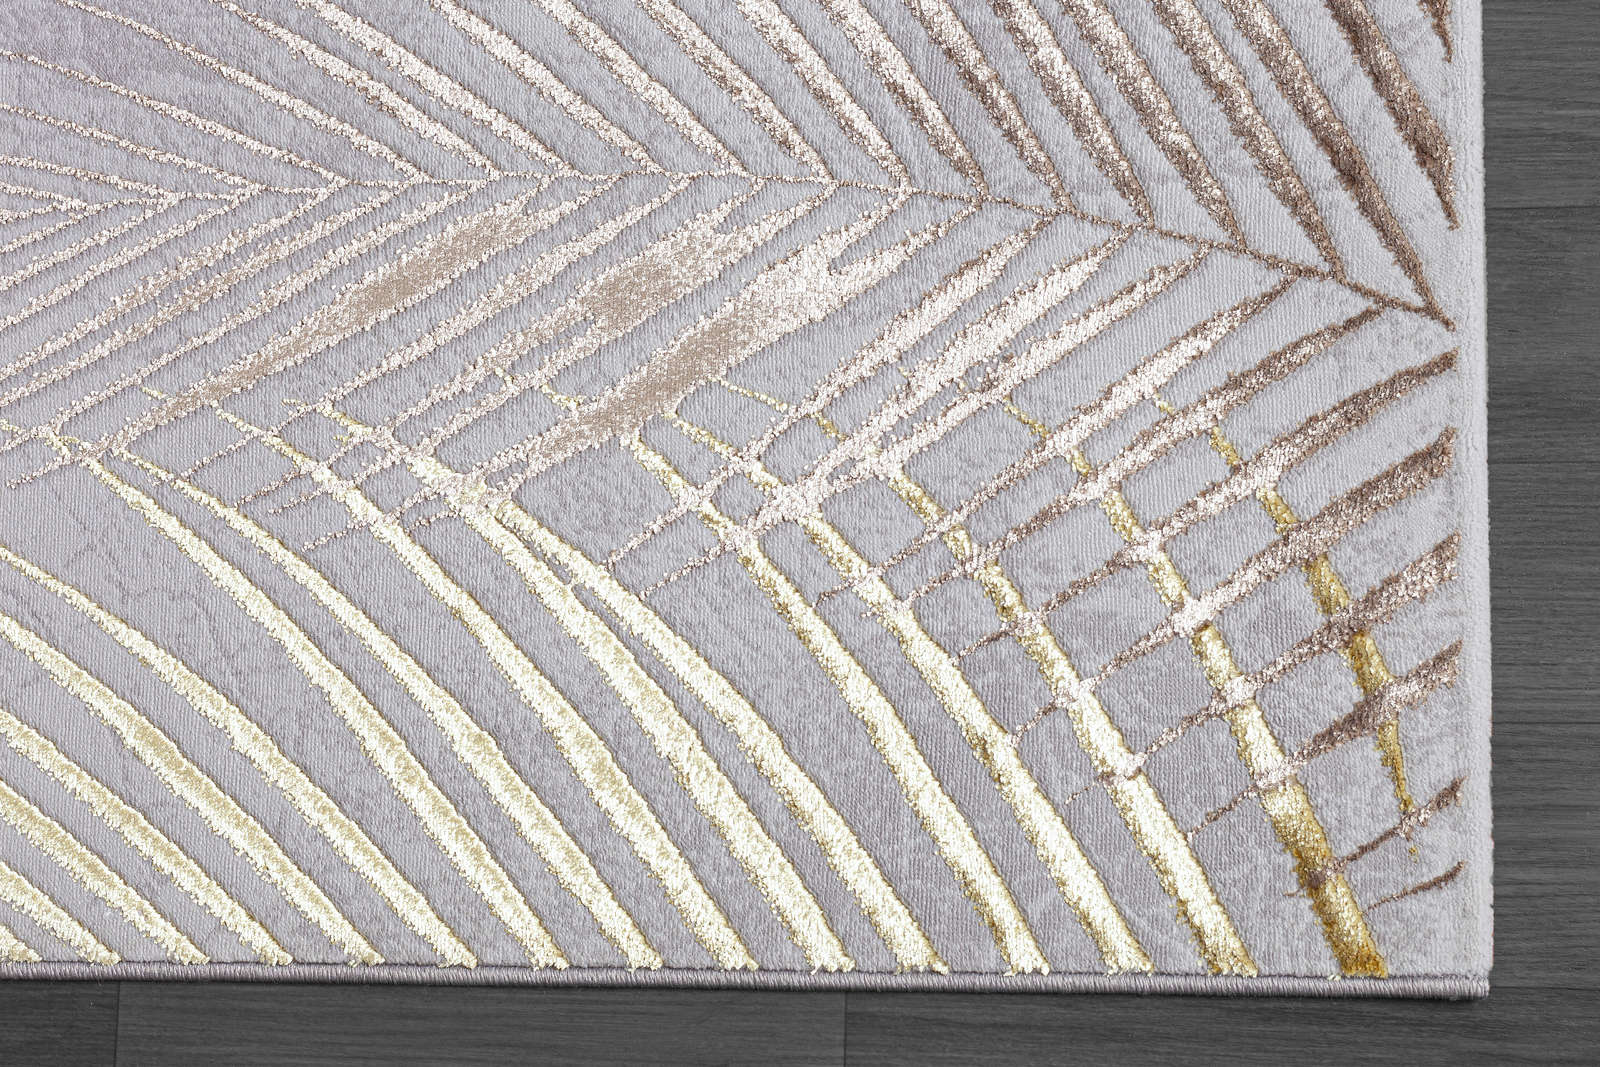             Knuffelzacht hoogpolig tapijt in grijs als loper - 230 x 160 cm
        